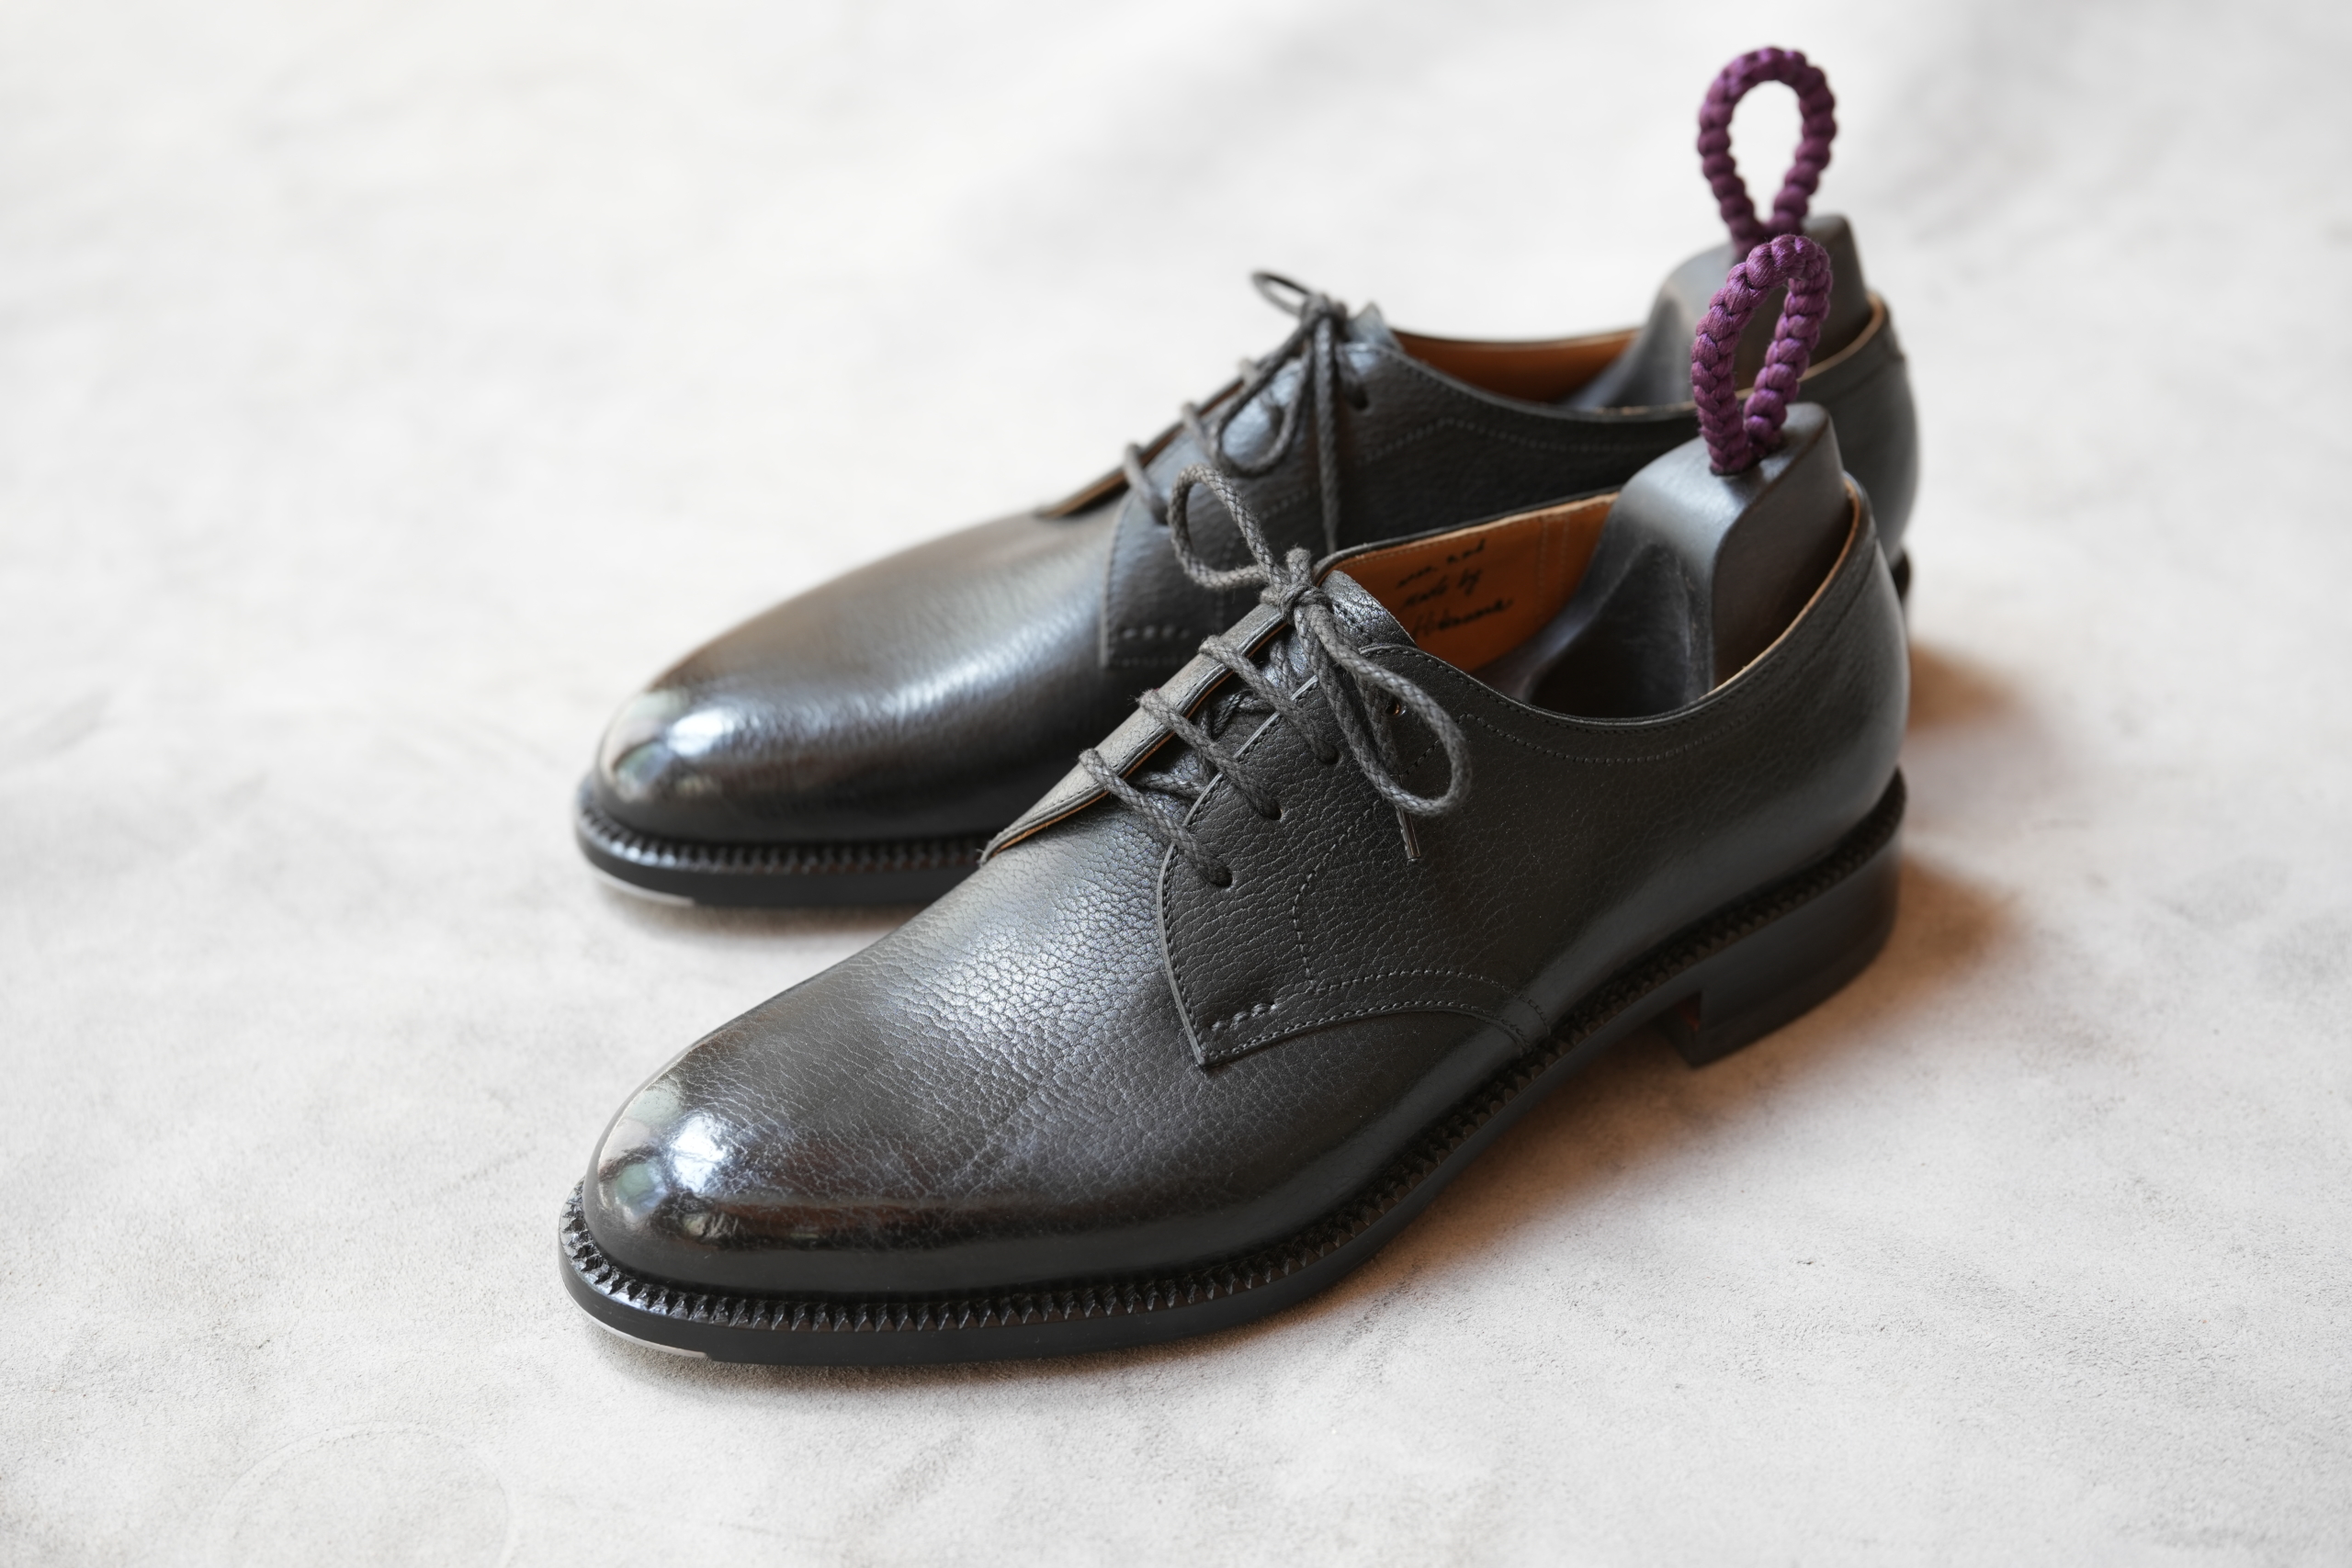 革靴に関するおはなし 第1回 完成したシボ革ダービーについて 革靴に関すること